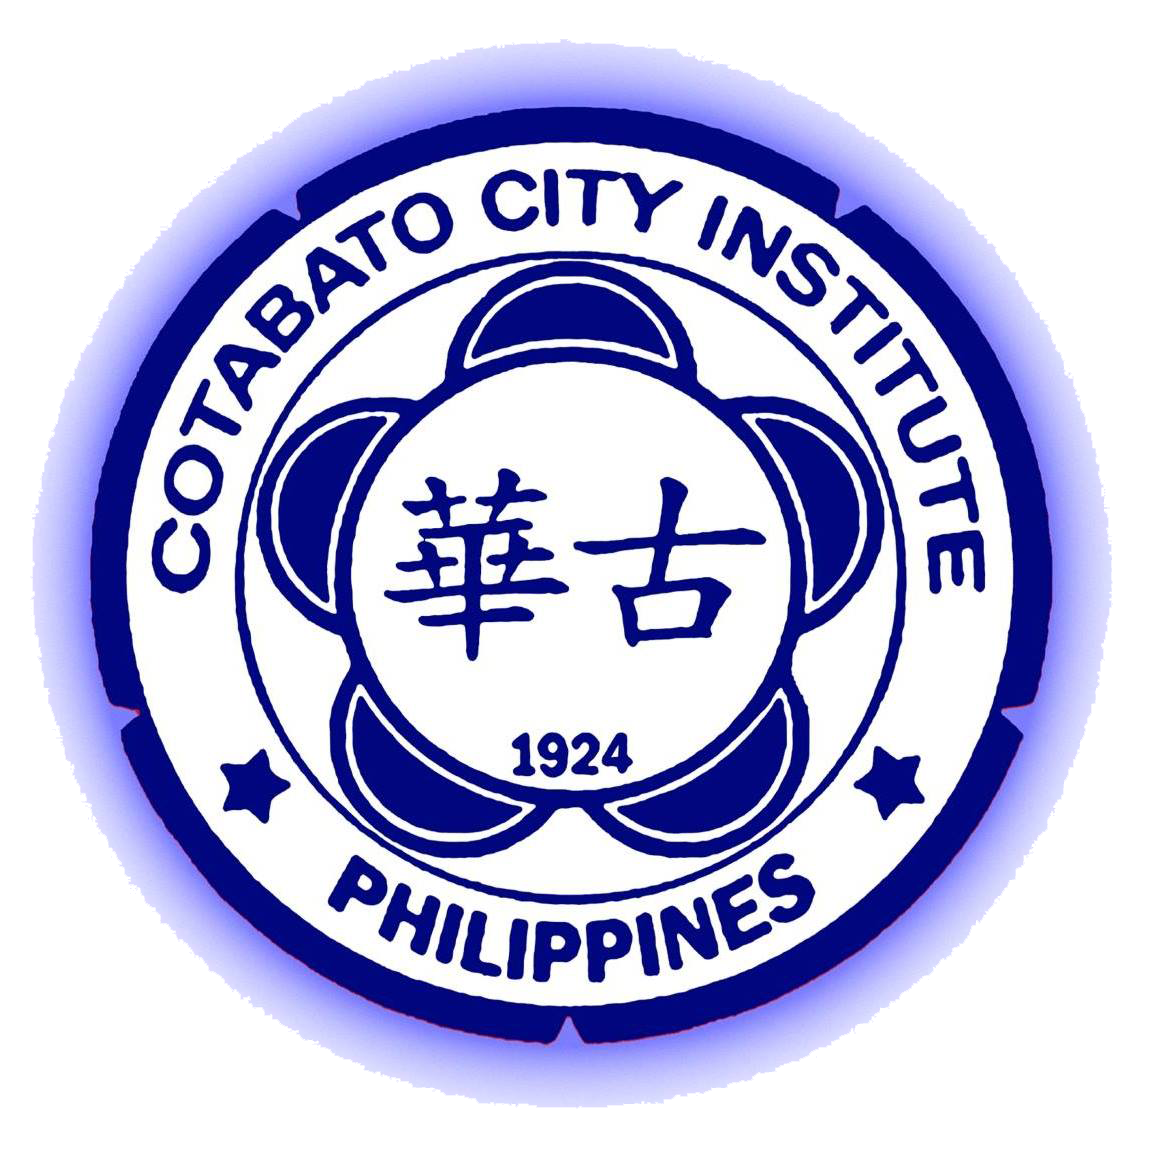 Cotabato City Institute, Inc.